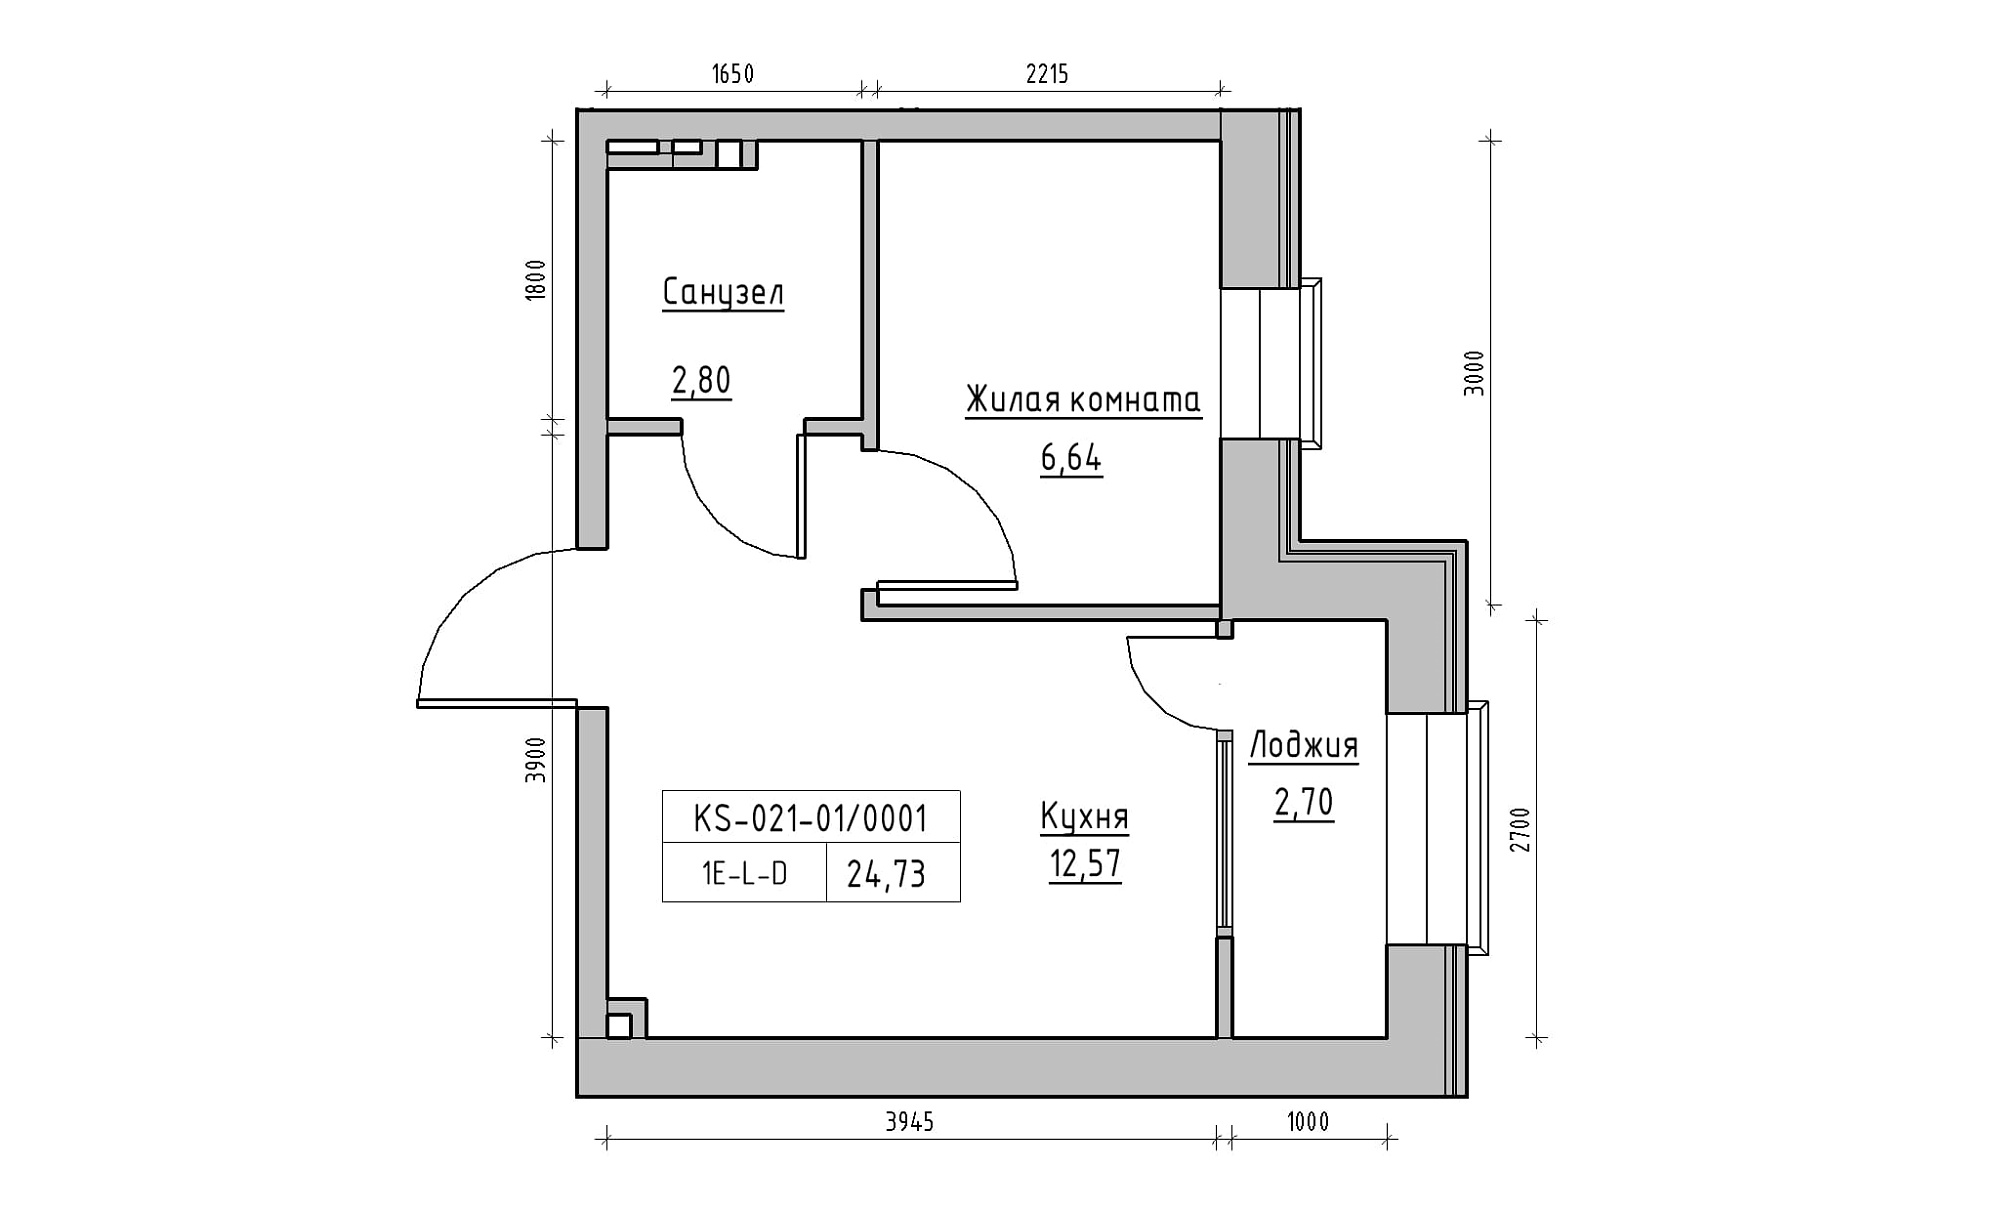 Планування 1-к квартира площею 24.73м2, KS-021-01/0001.